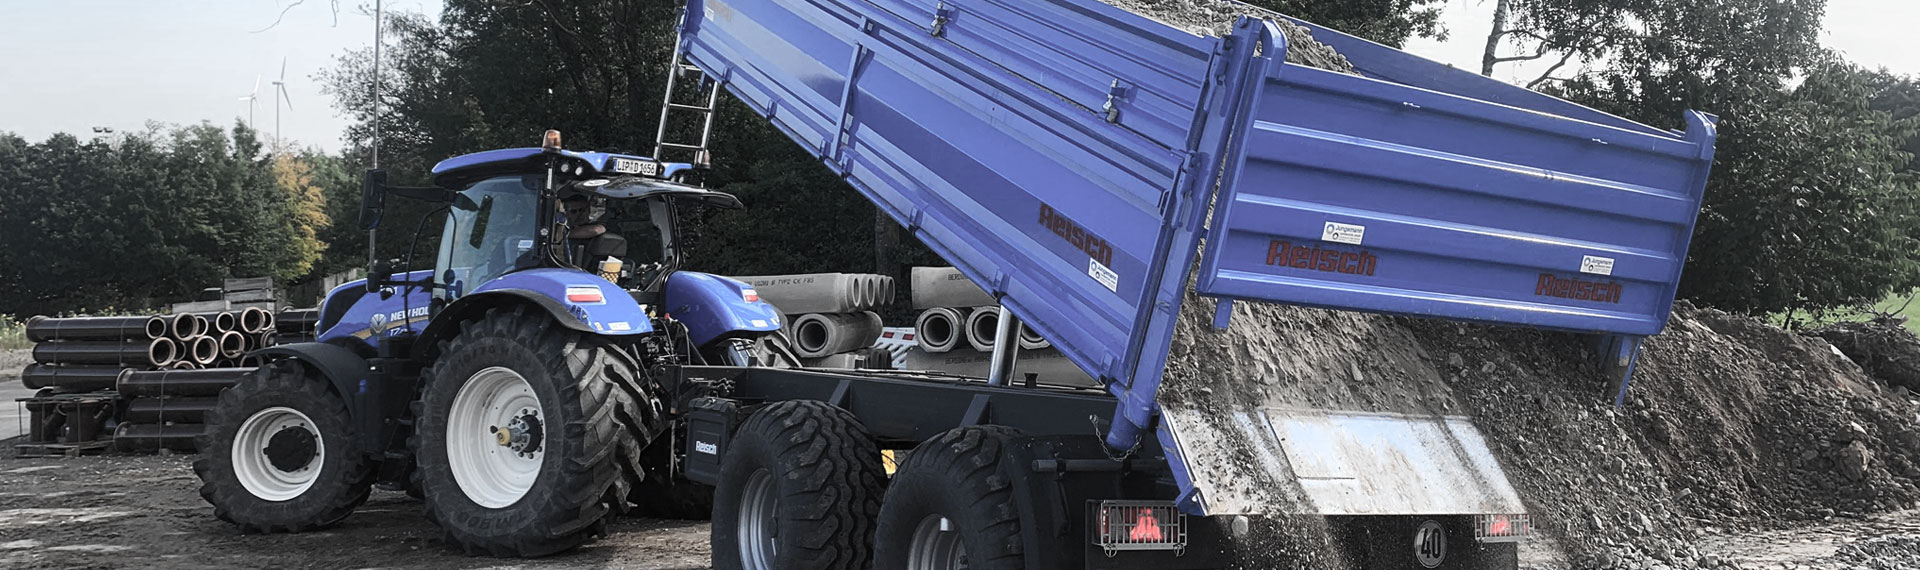 Niebieska wywrotka z zabudową ze stali Hardox®, rozładowująca ładunek skalny.